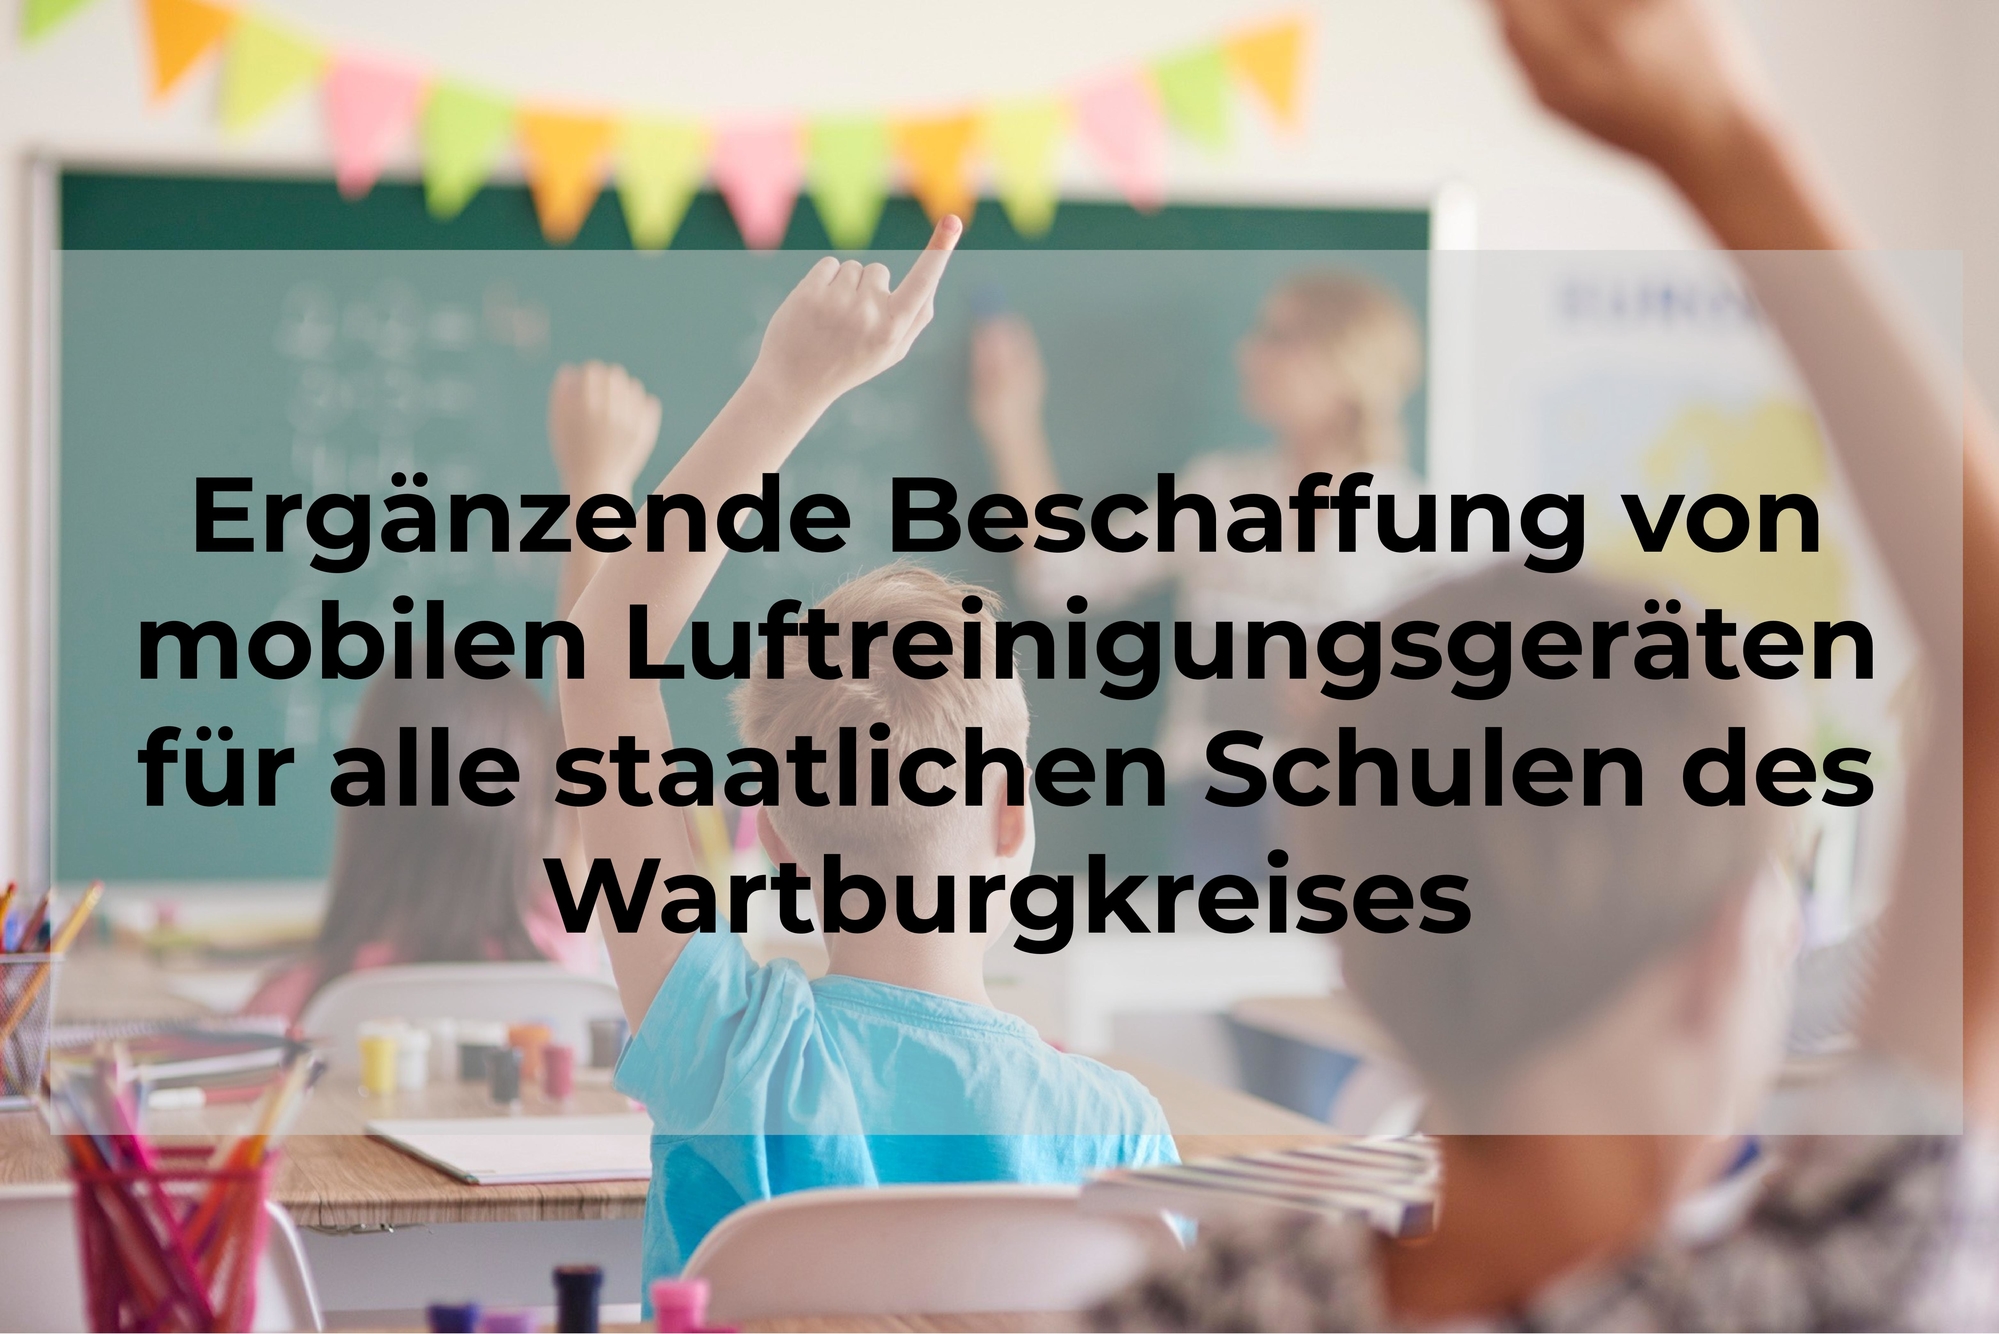 Antrag „Ergänzende Beschaffung von mobilen Luftreinigungsgeräten für alle staatlichen Schulen des Wartburgkreises“